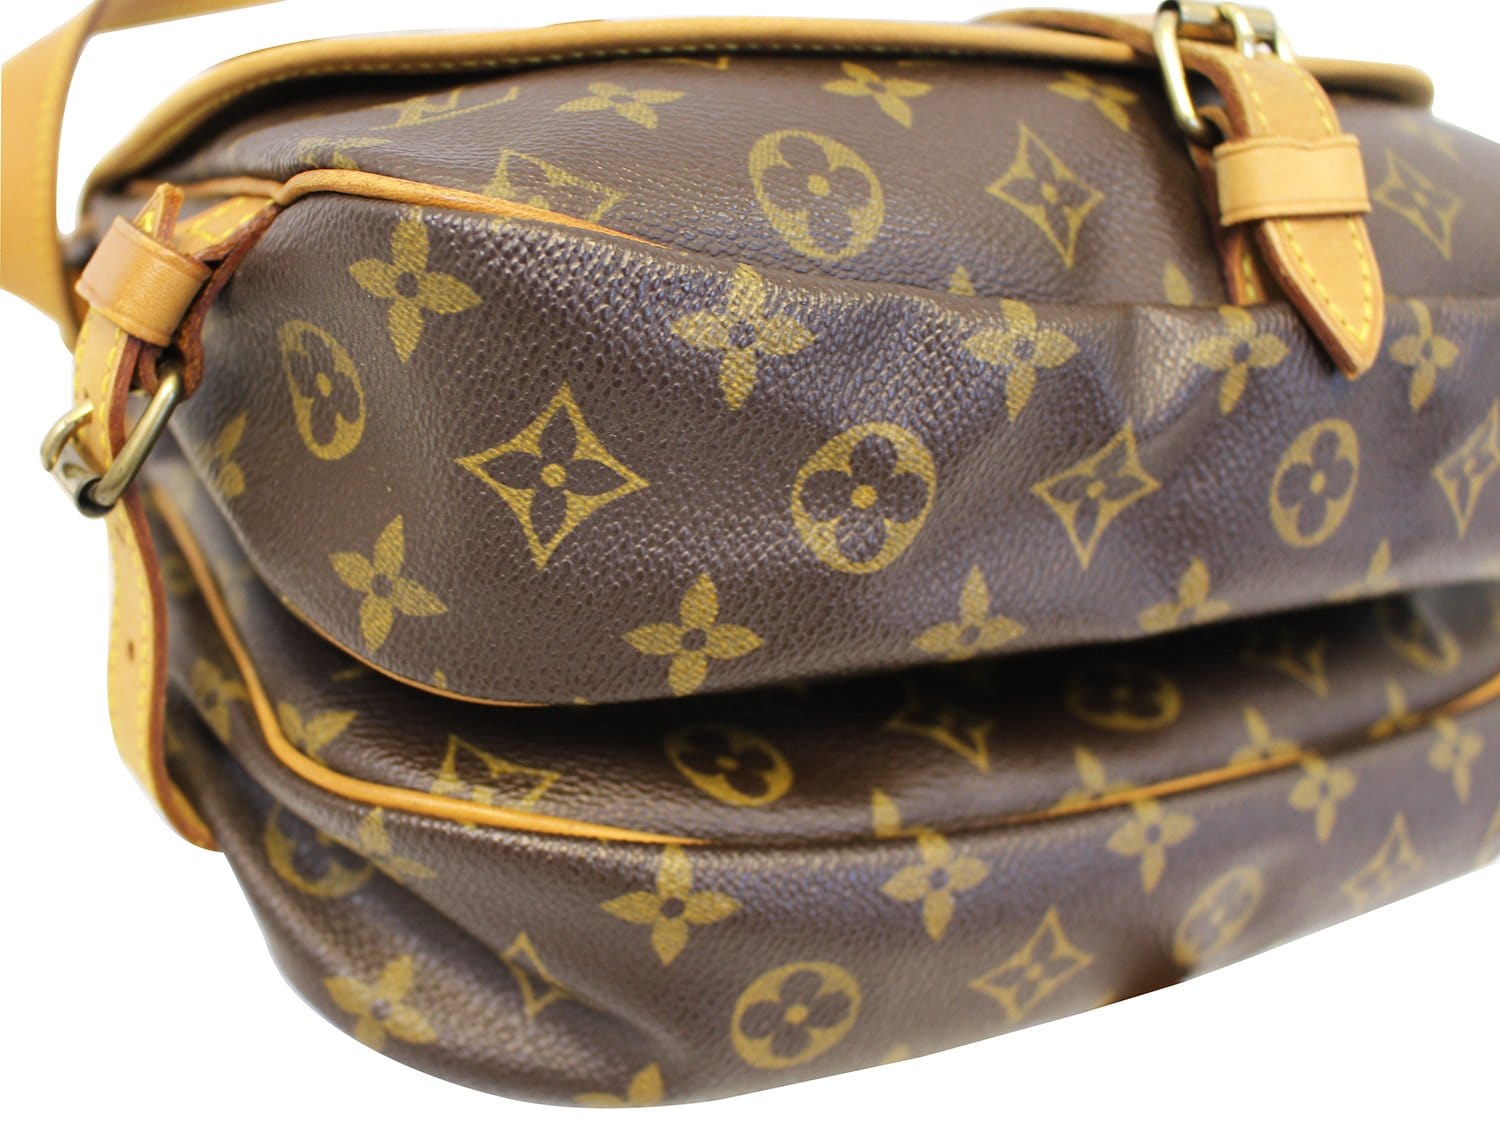 30 - Saumur - los bolsos louis vuitton mas iconicos - Vuitton - Shoulder -  Monogram - M42256 – Her outfit is also Louis Vuitton - Louis - Bag